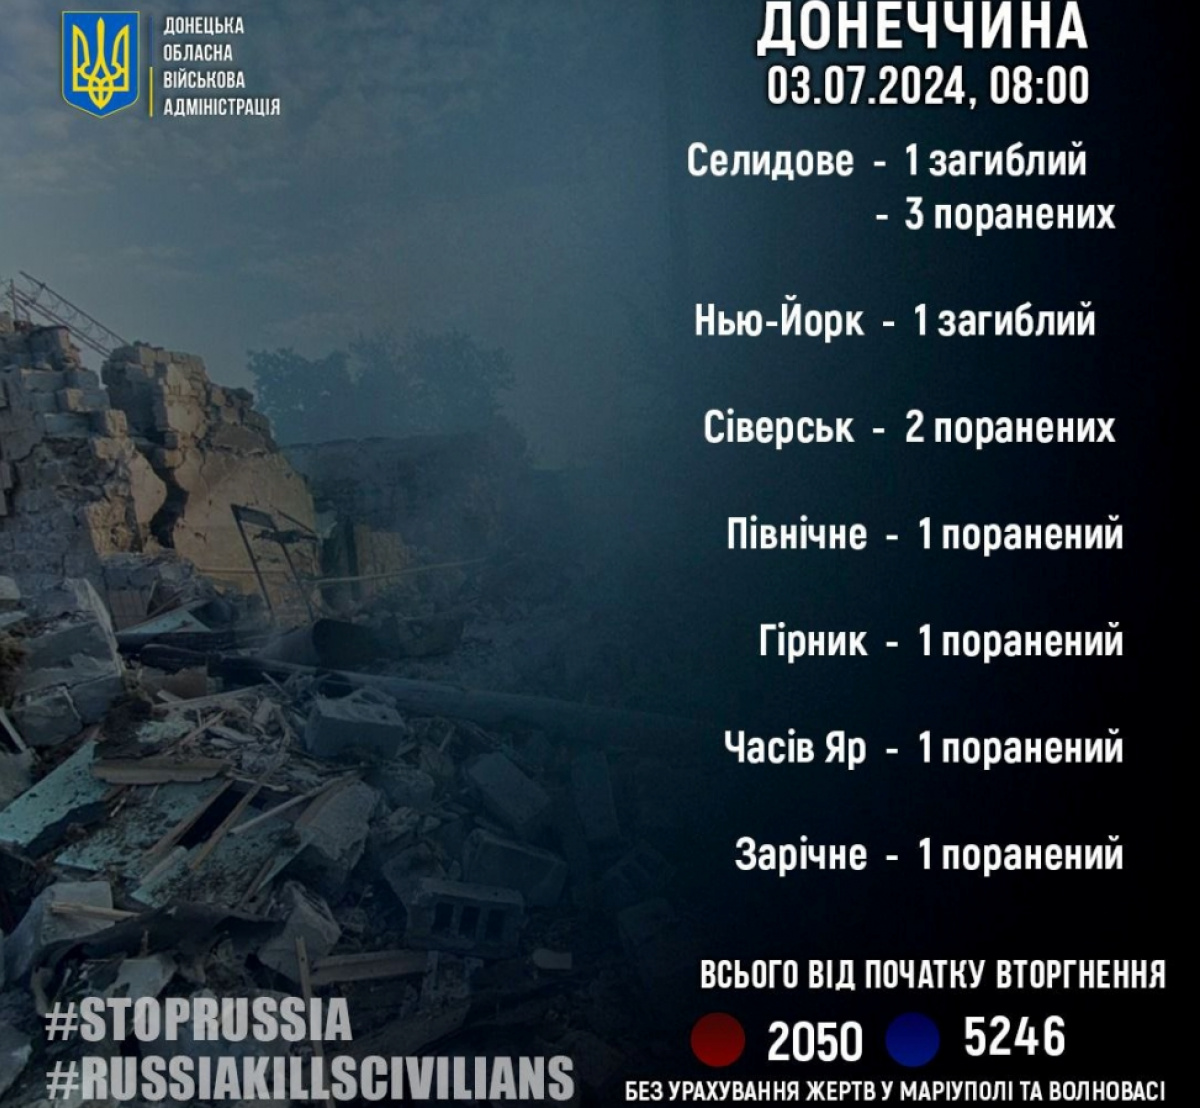  Донецька область: 2 загиблих та 9 постраждалих від обстрілів РФ. Фото: Філашкін / Telegram